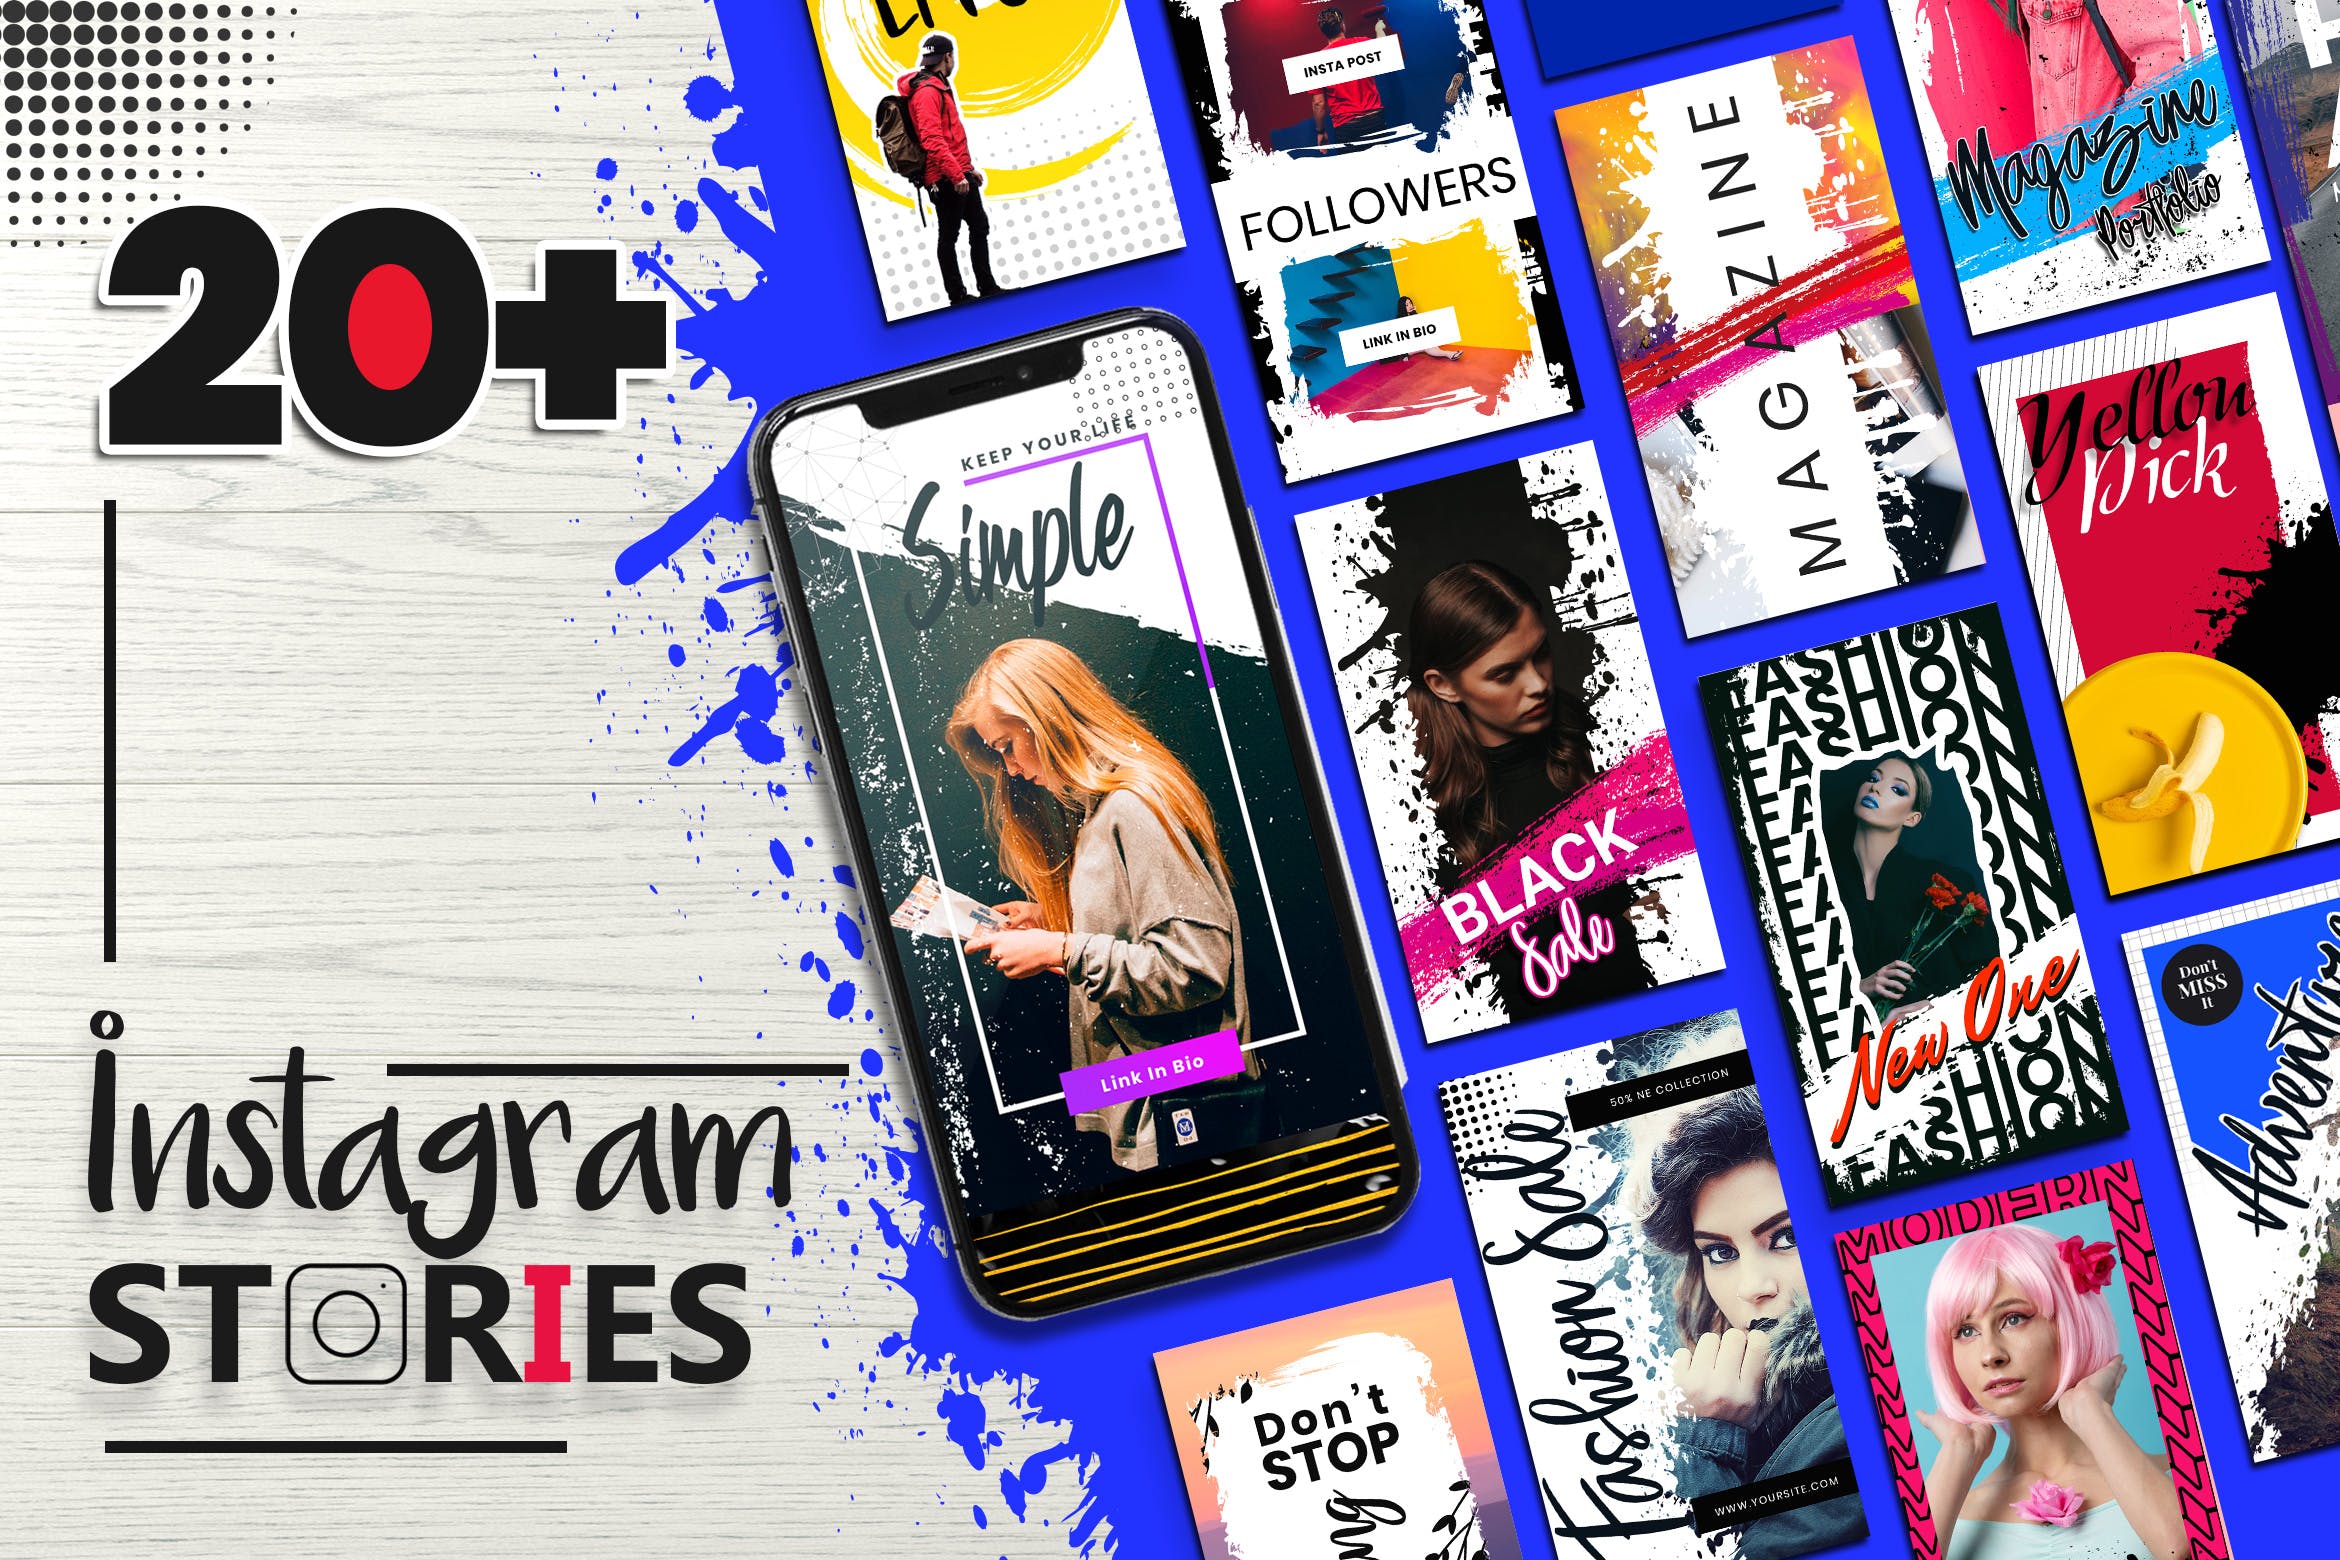 20+笔刷纹理设计风格Instagram社交品牌故事设计模板素材库精选 Instagram Stories Template插图